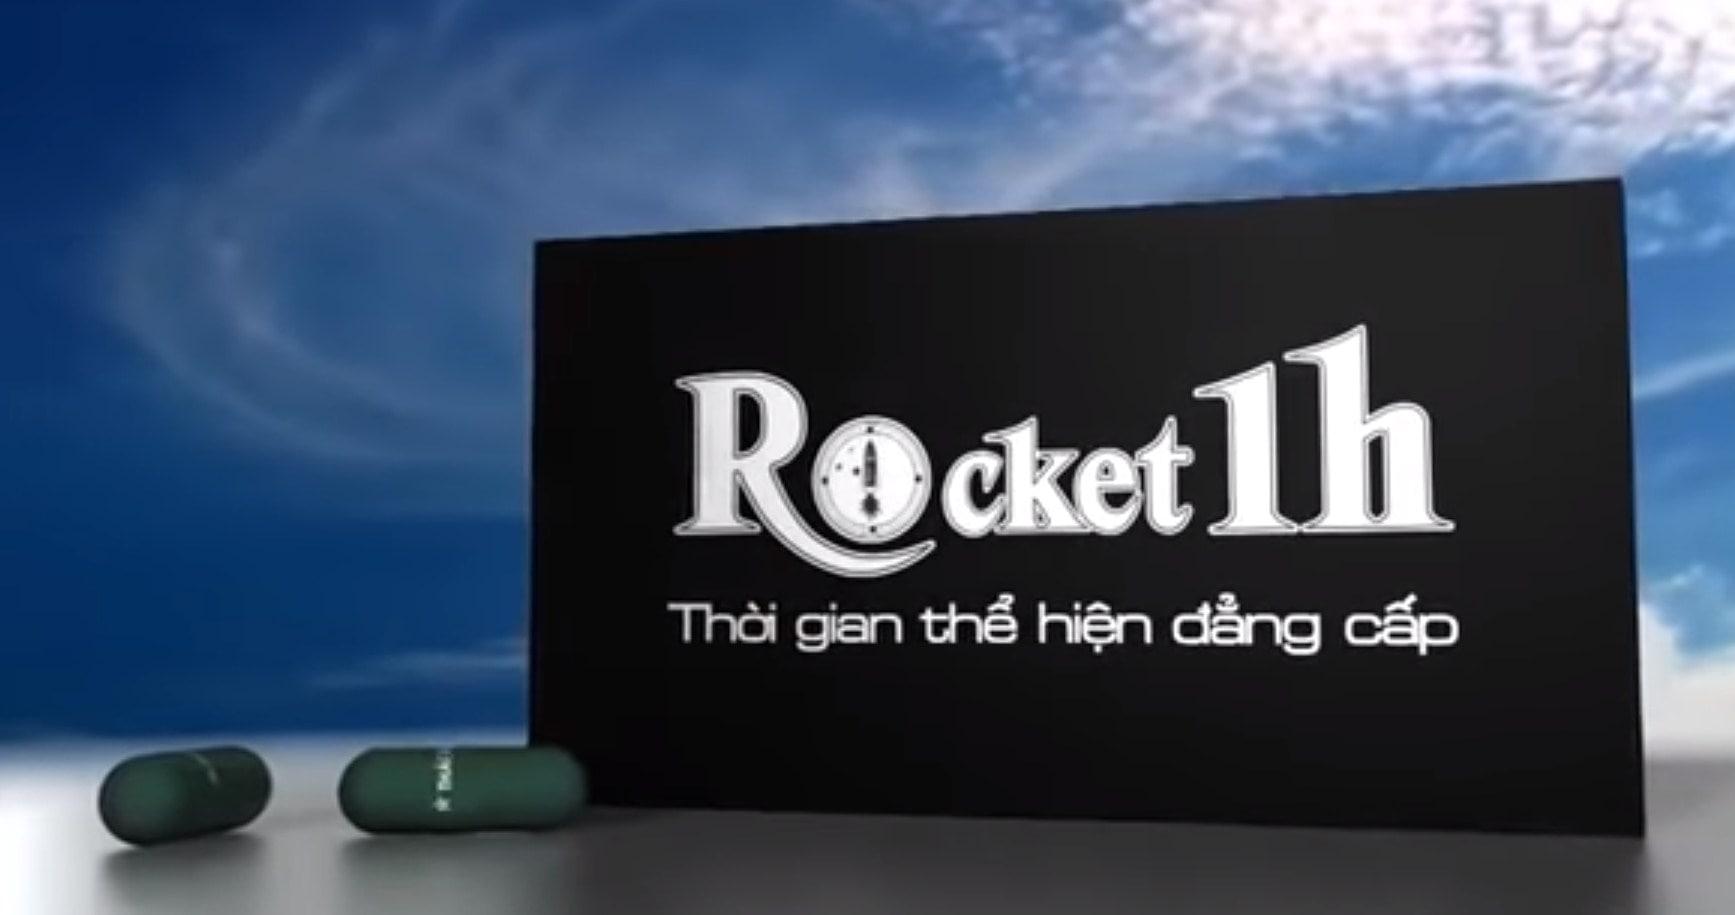 Sử dụng Rocket 1h đúng cách để mang lại hiệu quả tối đa